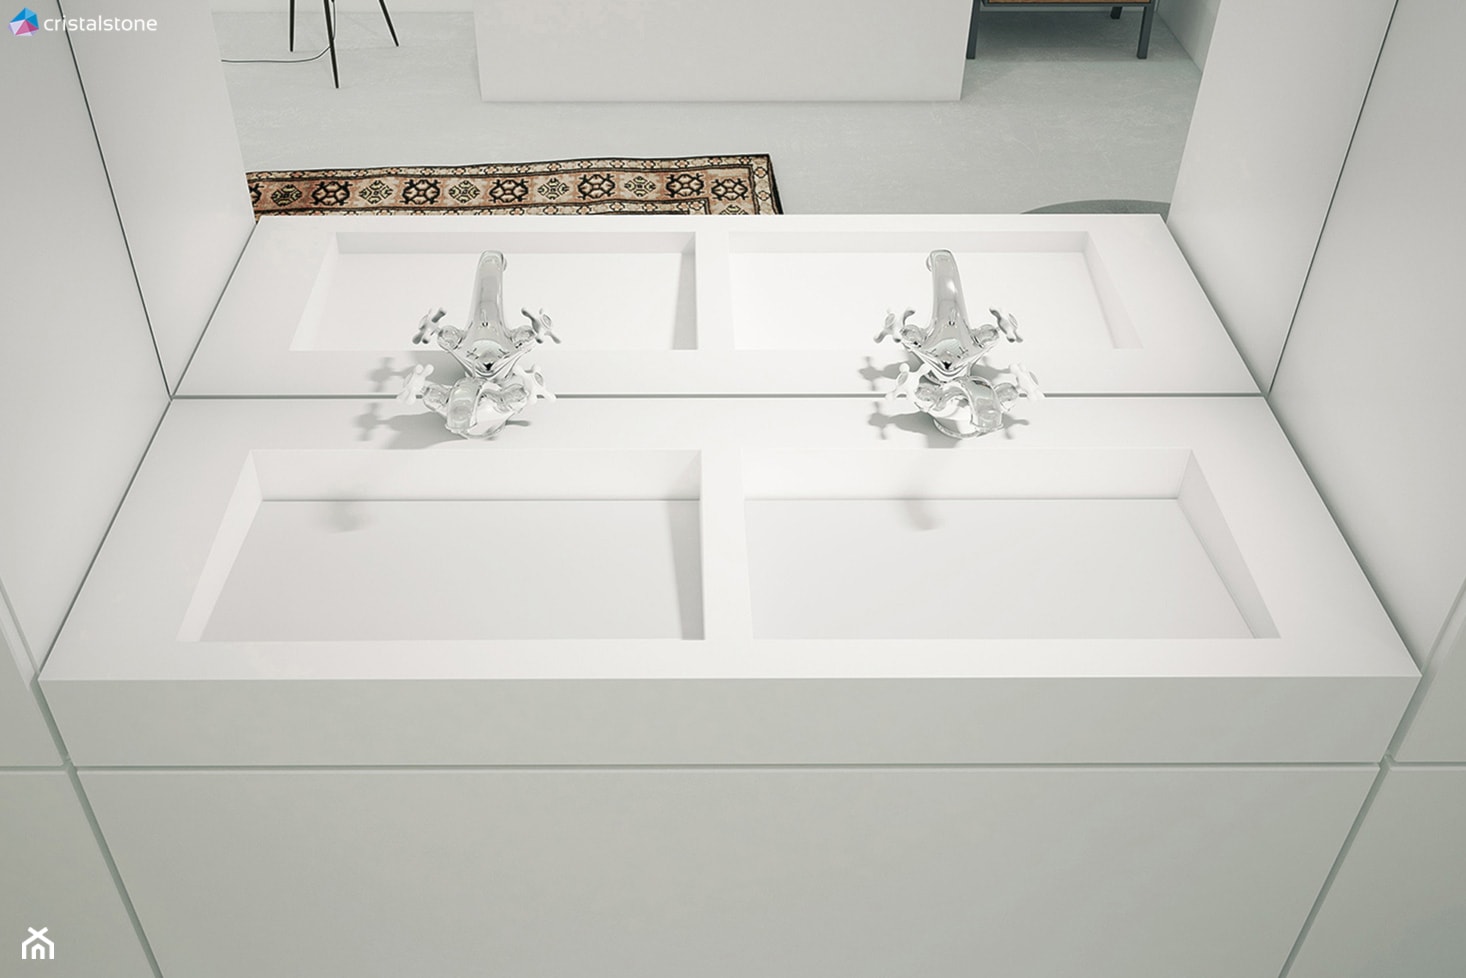 Minimalistyczna łazienka z Sztokholmie - Łazienka, styl nowoczesny - zdjęcie od Cristalstone - Homebook